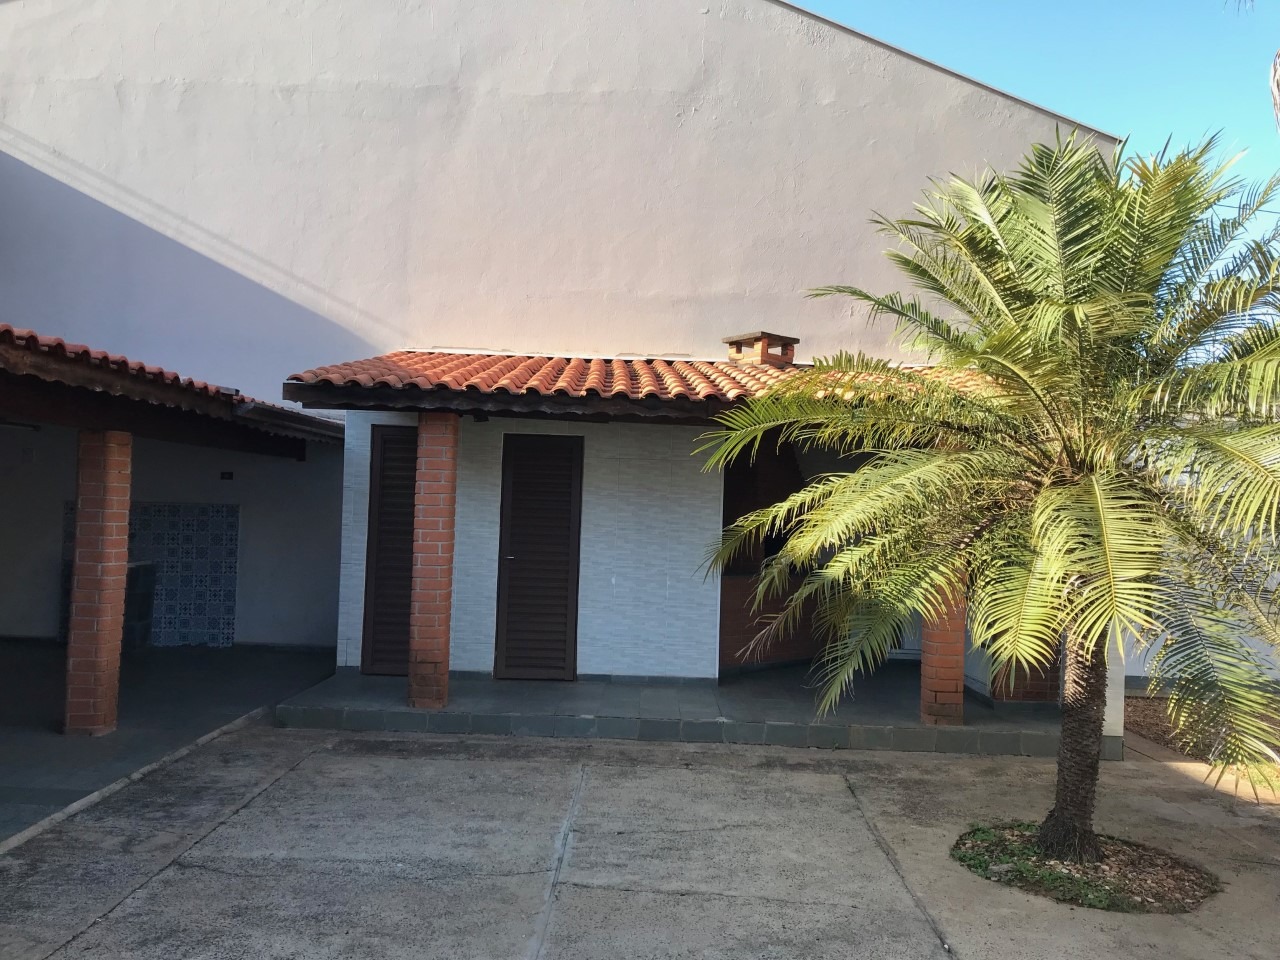 Casa em Condomínio à venda, 3 quartos, 1 suíte, 4 vagas, no bairro Dois Córregos em Piracicaba - SP